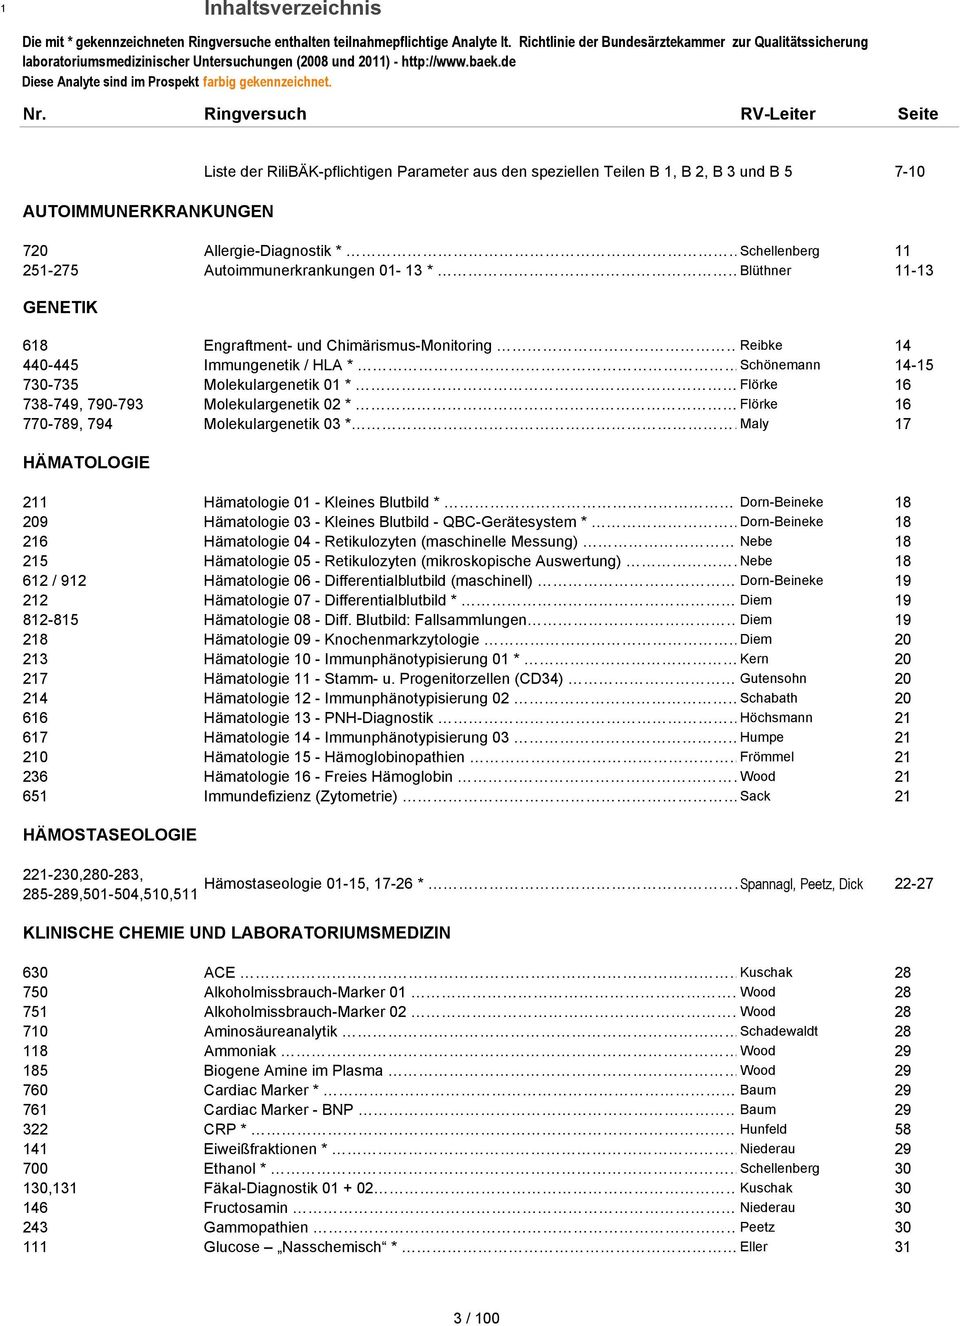 Ringversuch RV-Leiter Seite Liste der RiliBÄK-pflichtigen Parameter aus den speziellen Teilen B 1, B 2, B 3 und B 5 7-10 AUTOIMMUNERKRANKUNGEN 720 Allergie-Diagnostik * Schellenberg 11 251-275